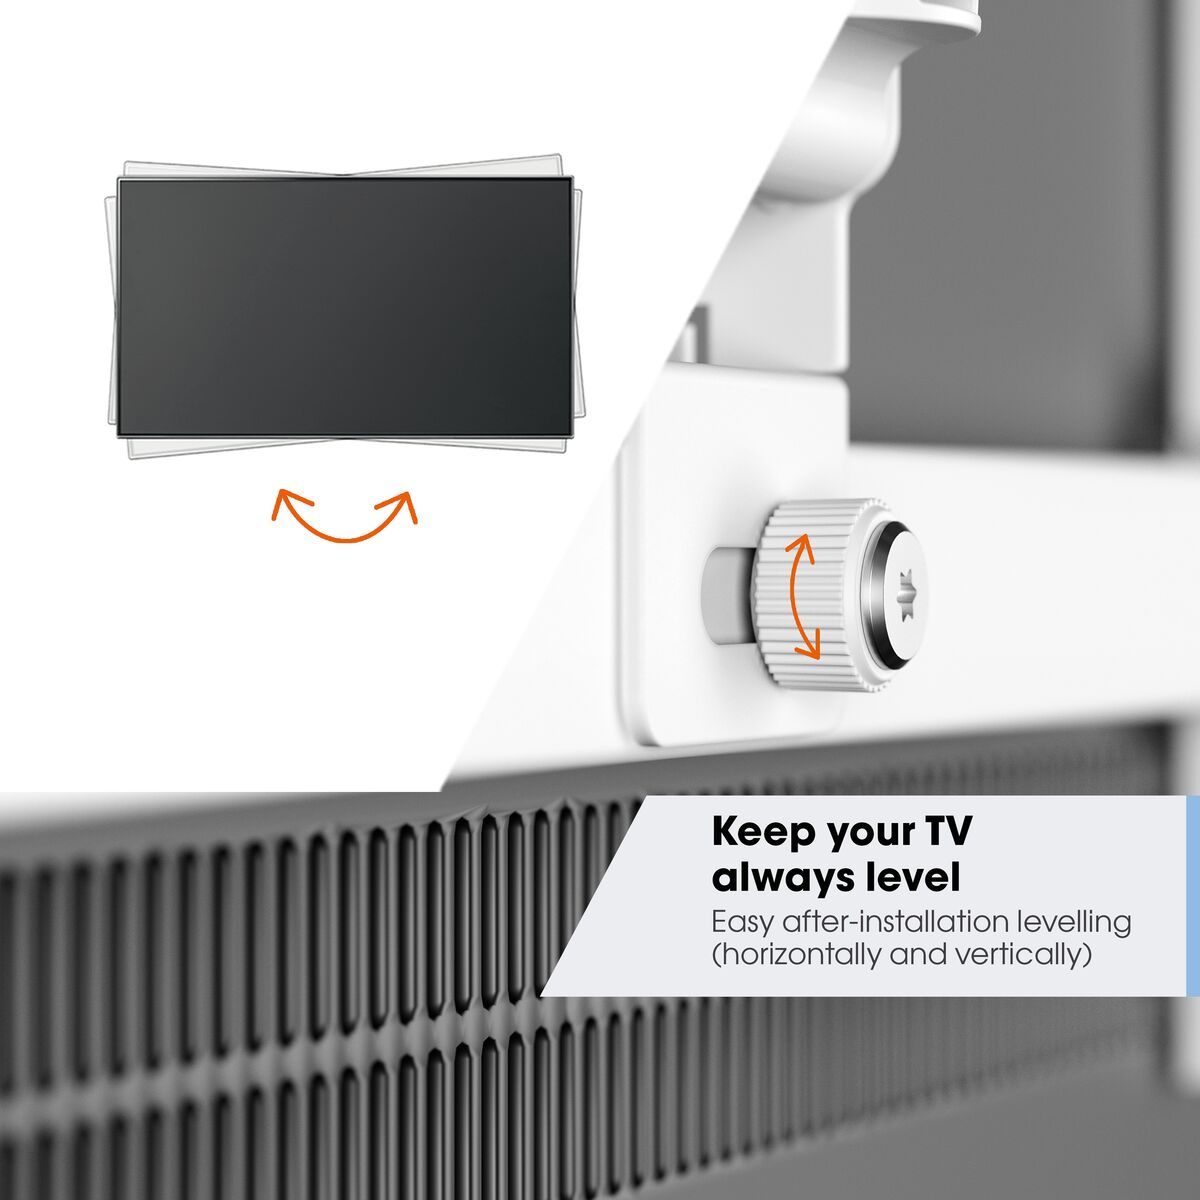 Vogel's TVM 3445 Schwenkbare TV-Wandhalterung (Weiß) - Geeignet für Fernseher von 32 bis 65 Zoll - Voll beweglich (bis zu 180°) schwenkbar - Bis zu 20° neigbar - USP